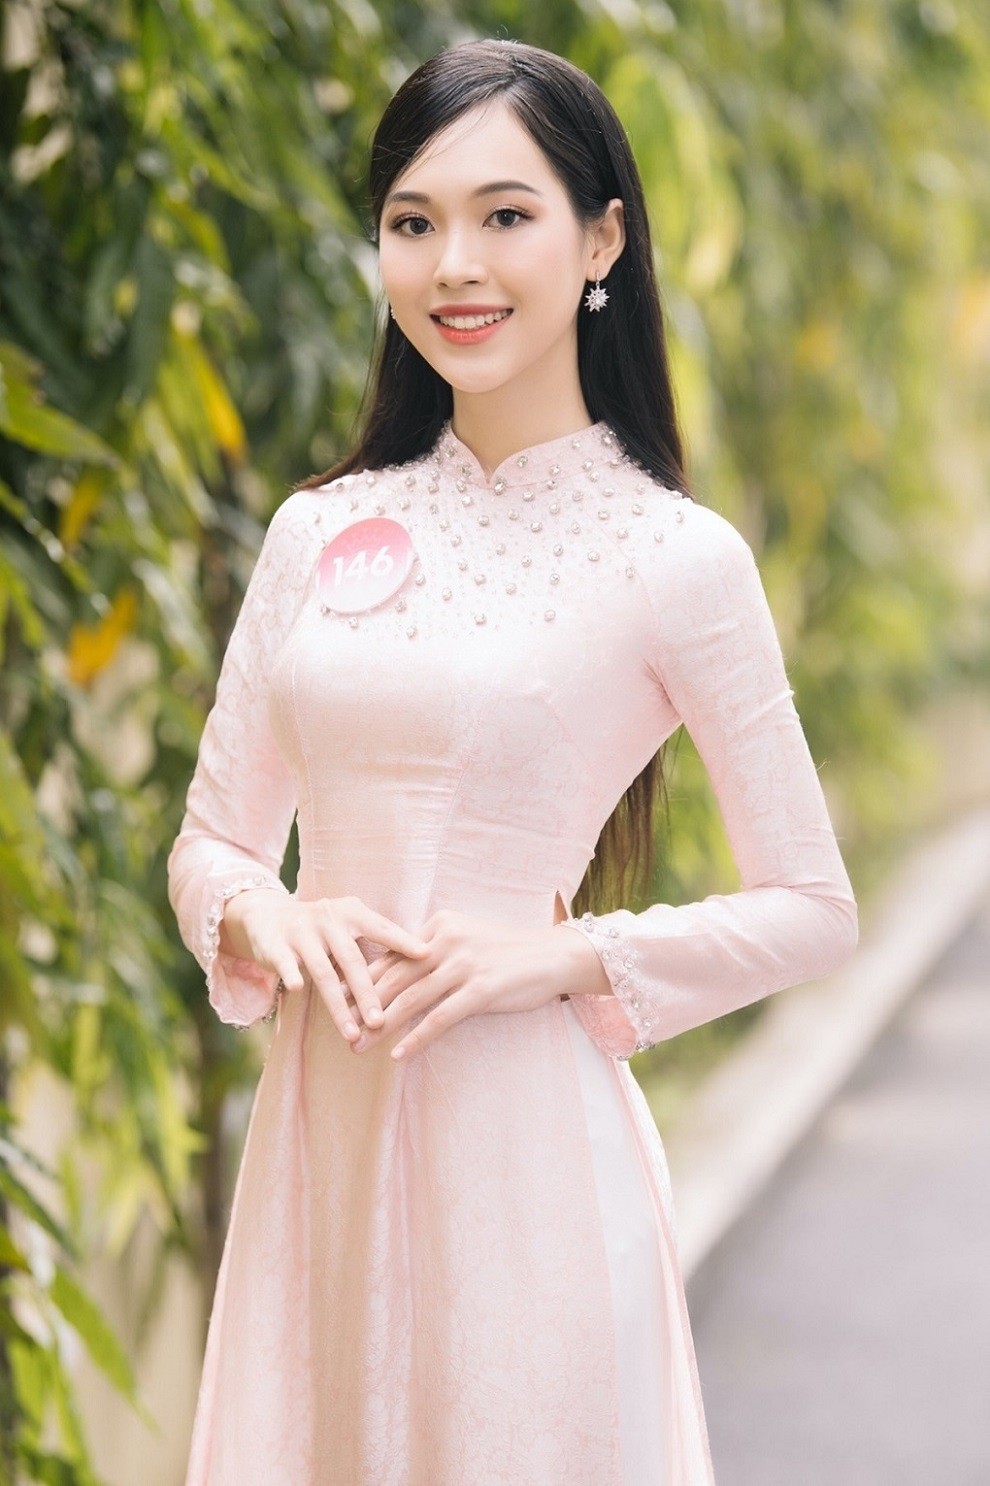 Nhan sắc quyến rũ của thí sinh quê Thanh Hóa được kỳ vọng cao tại Hoa hậu Việt Nam 2022